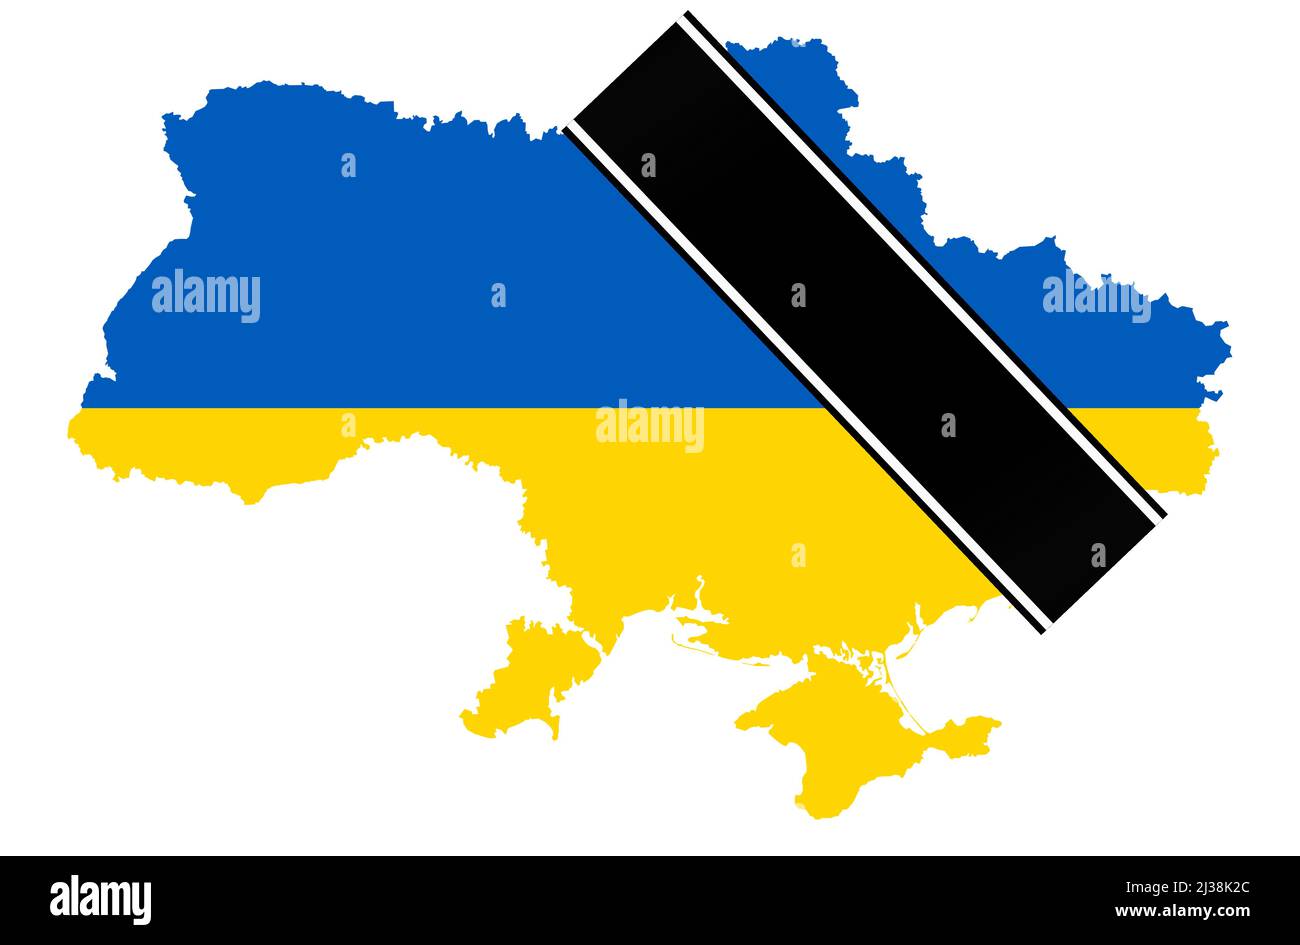 eps-Vektor-Illustration mit Silhouette des Landes ukraine mit Länderfarben und schwarzem Trauerbanner für den Krieg 2022 Stock Vektor